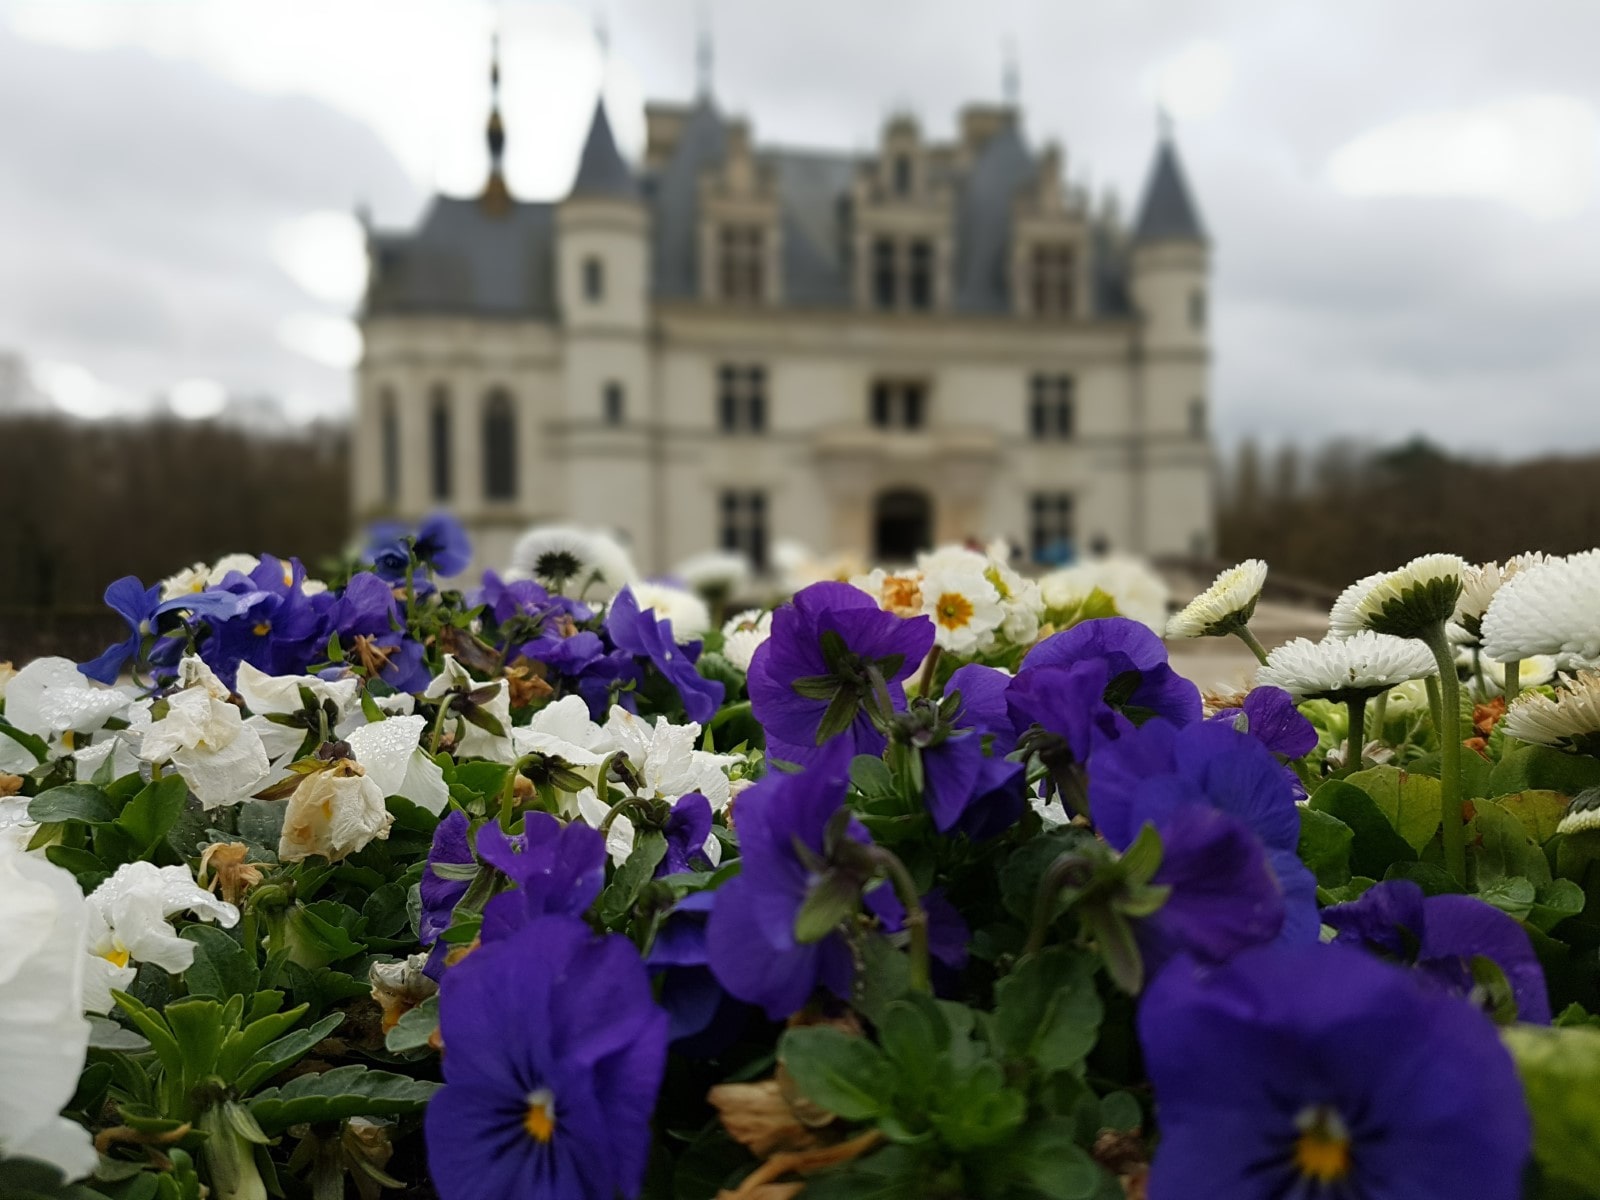 I fiori che adornano il castello vengono coltivati proprio nei giardini di Chenonceau.